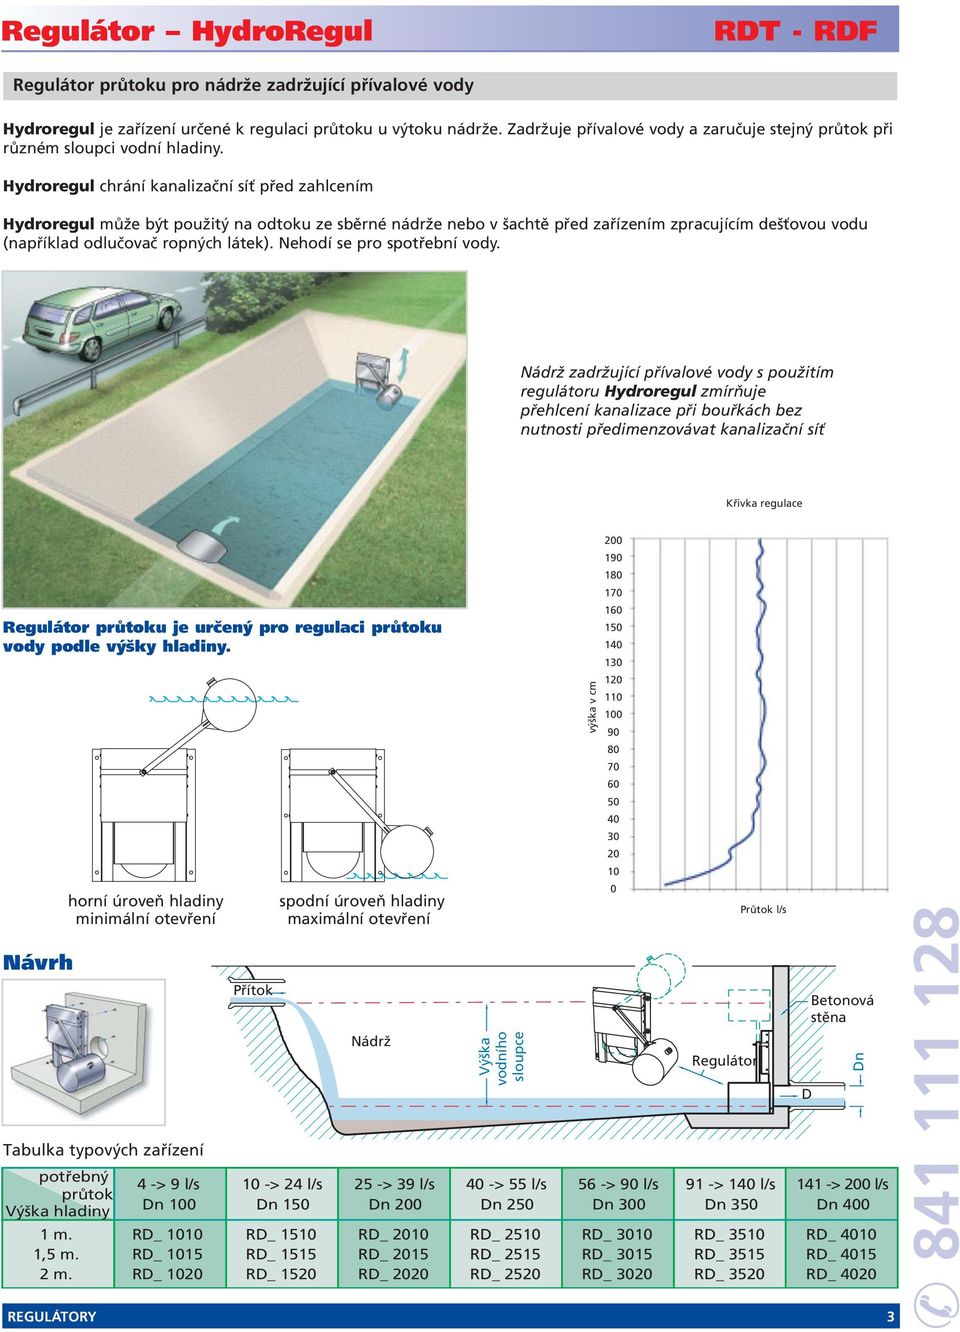 ydroregul chrání kanalizační síť před zahlcením ydroregul může být použitý na odtoku ze sběrné nádrže nebo v šachtě před zařízením zpracujícím dešťovou vodu (například odlučovač ropných látek).